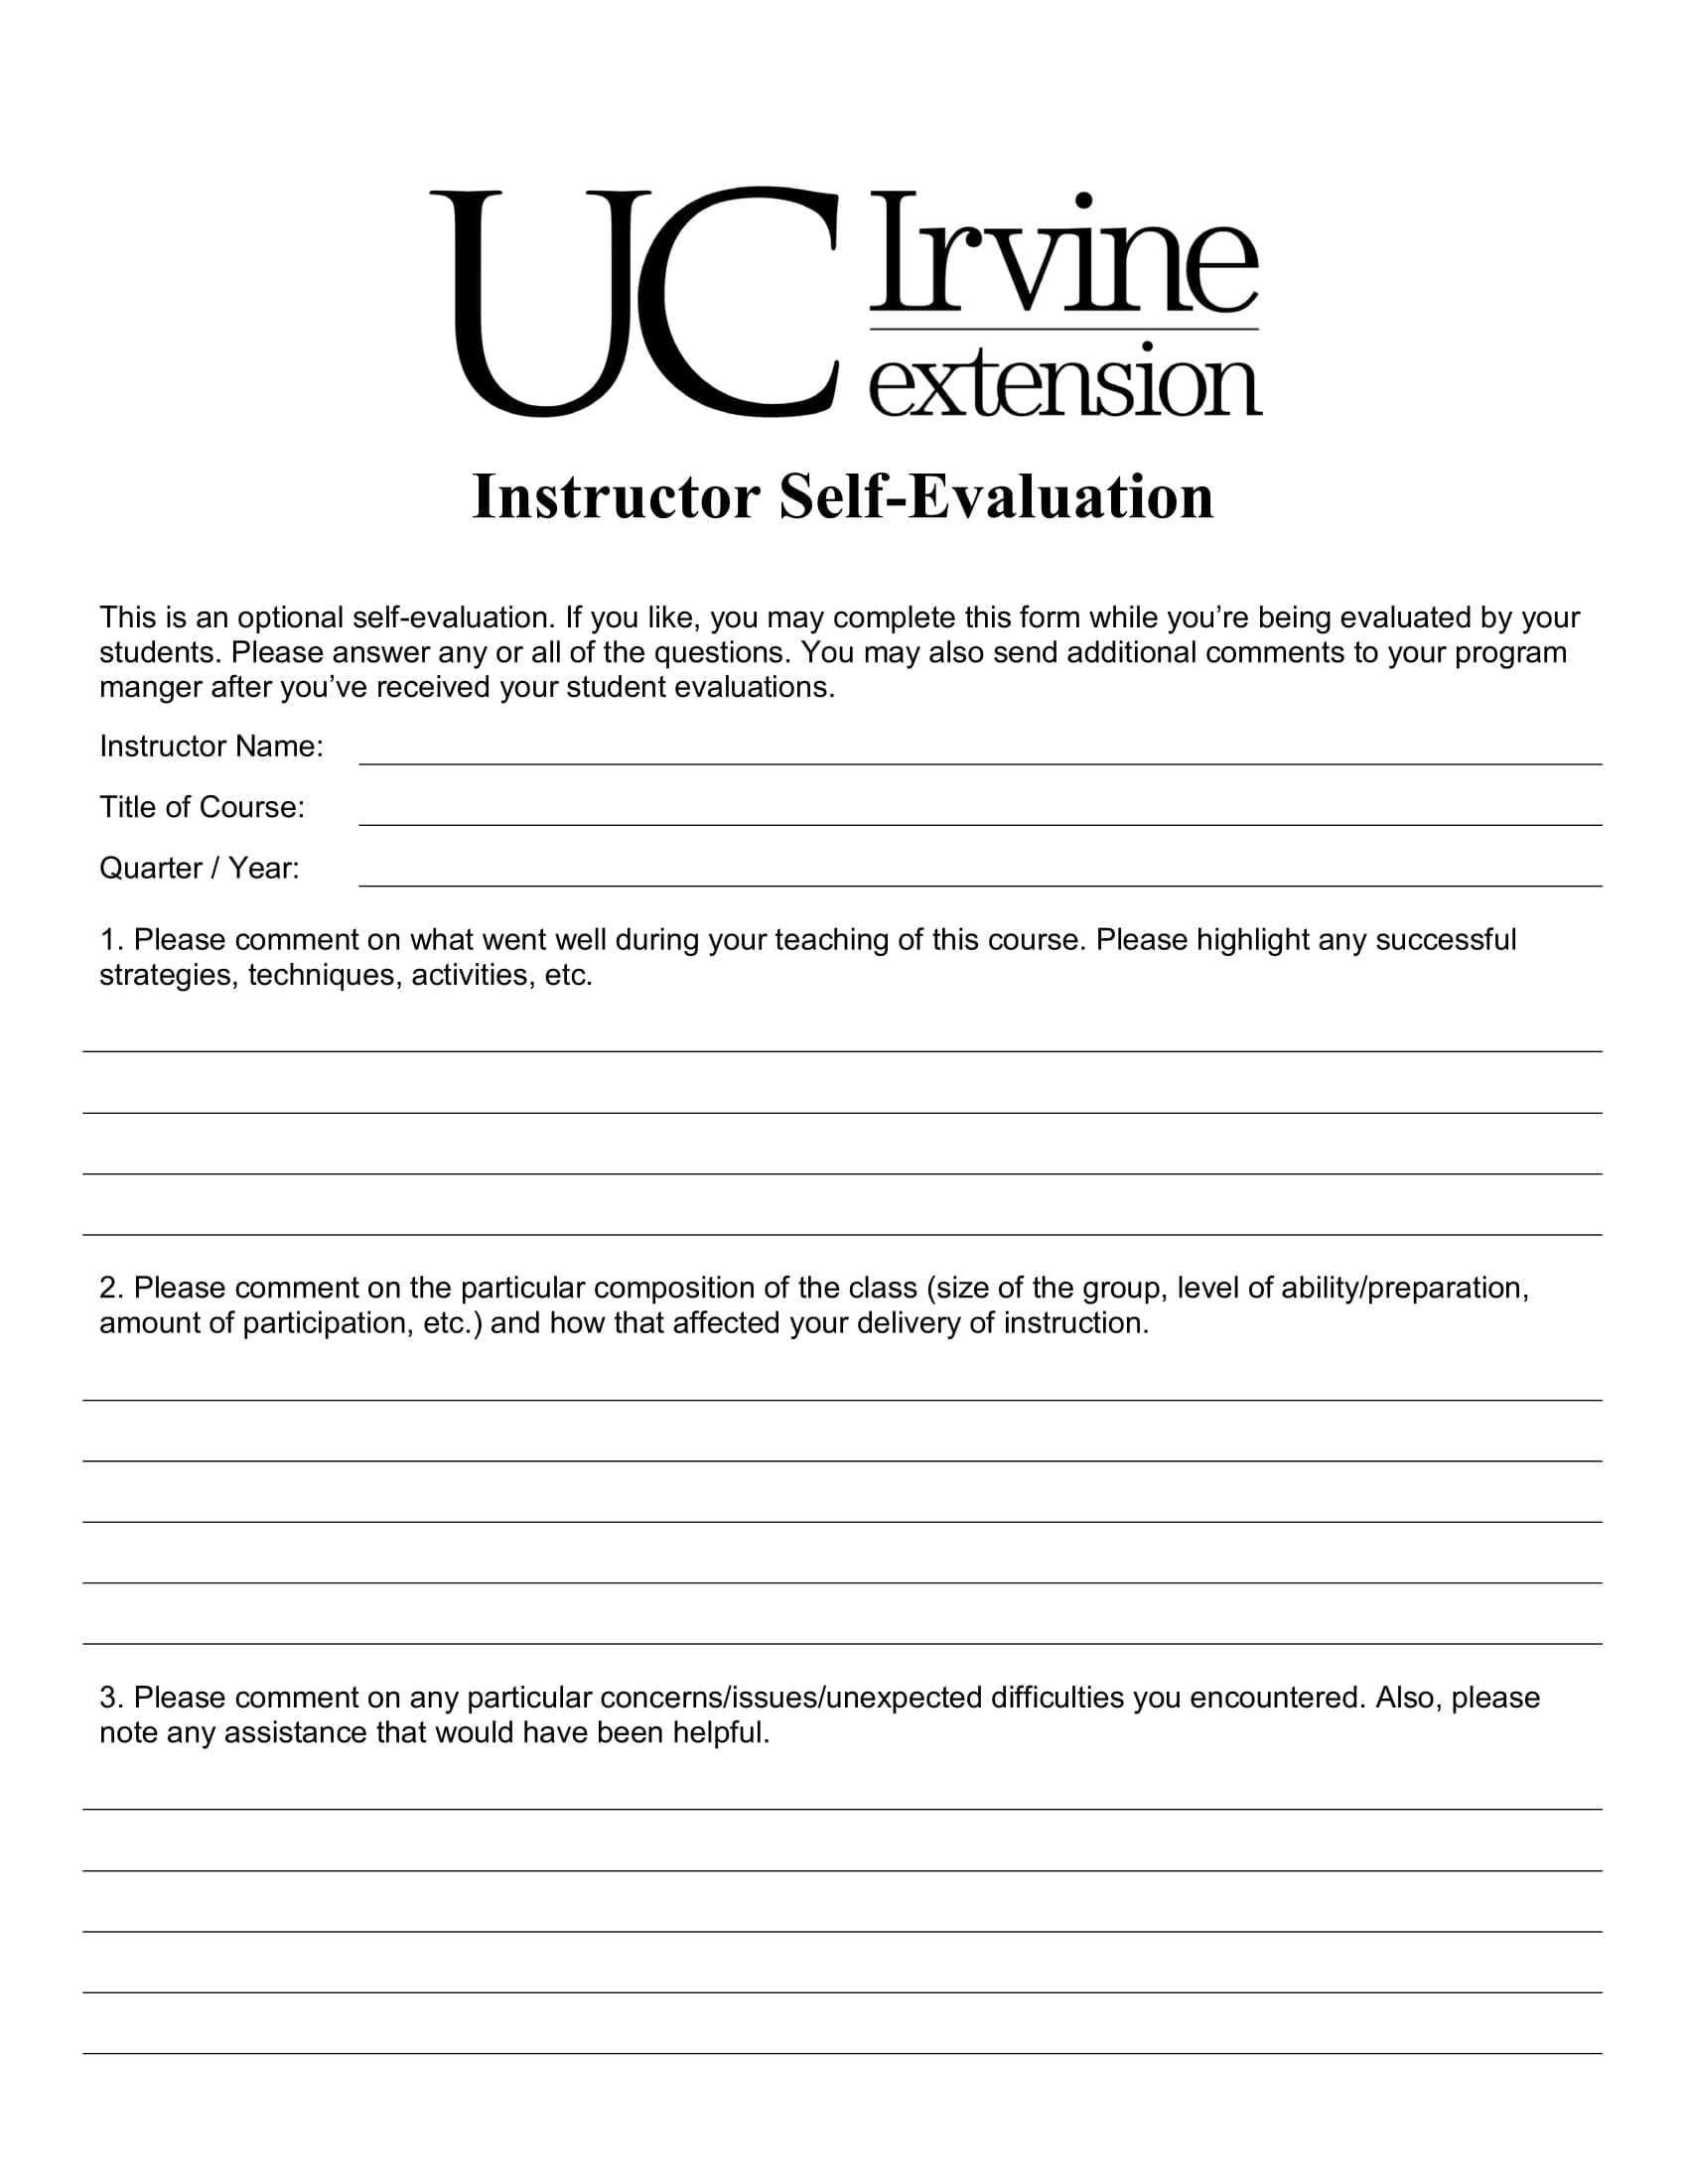 instructor self evaluation form 1